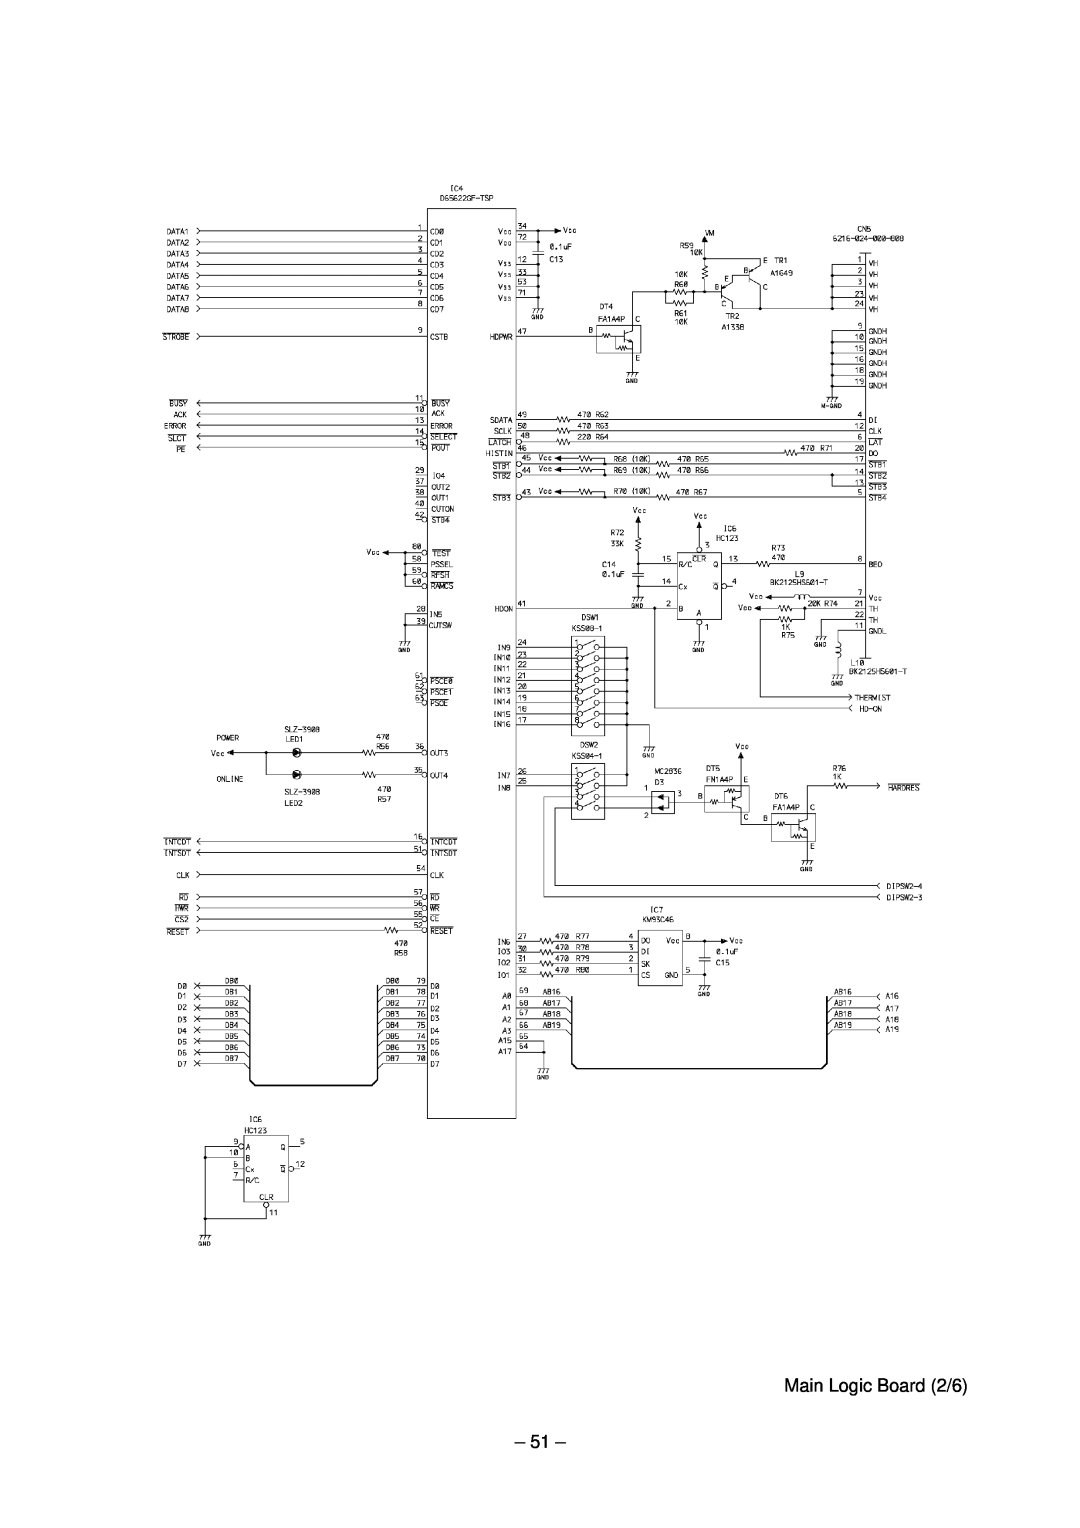 Star Micronics TSP200 technical manual Main Logic Board 2/6 